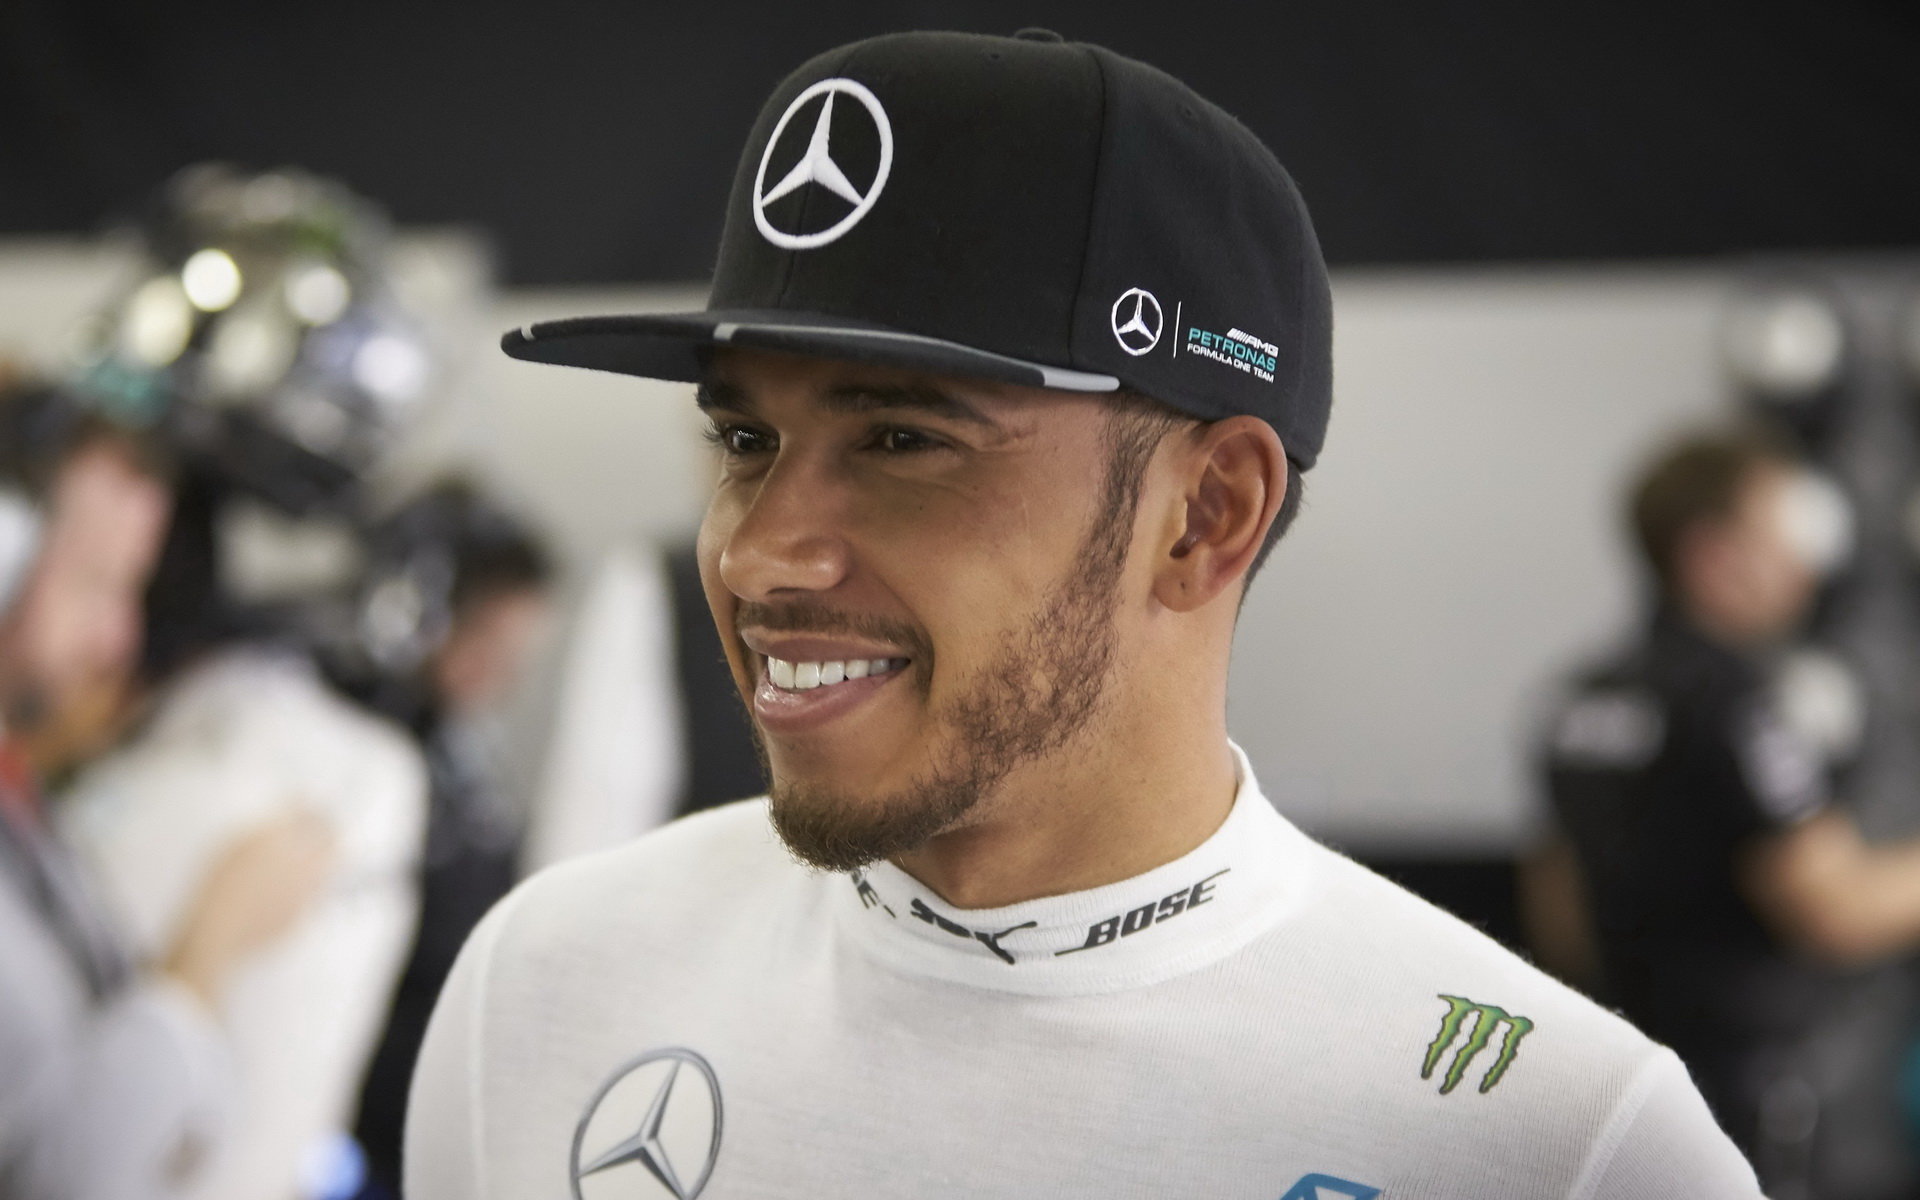 Lewis Hamilton v Číně